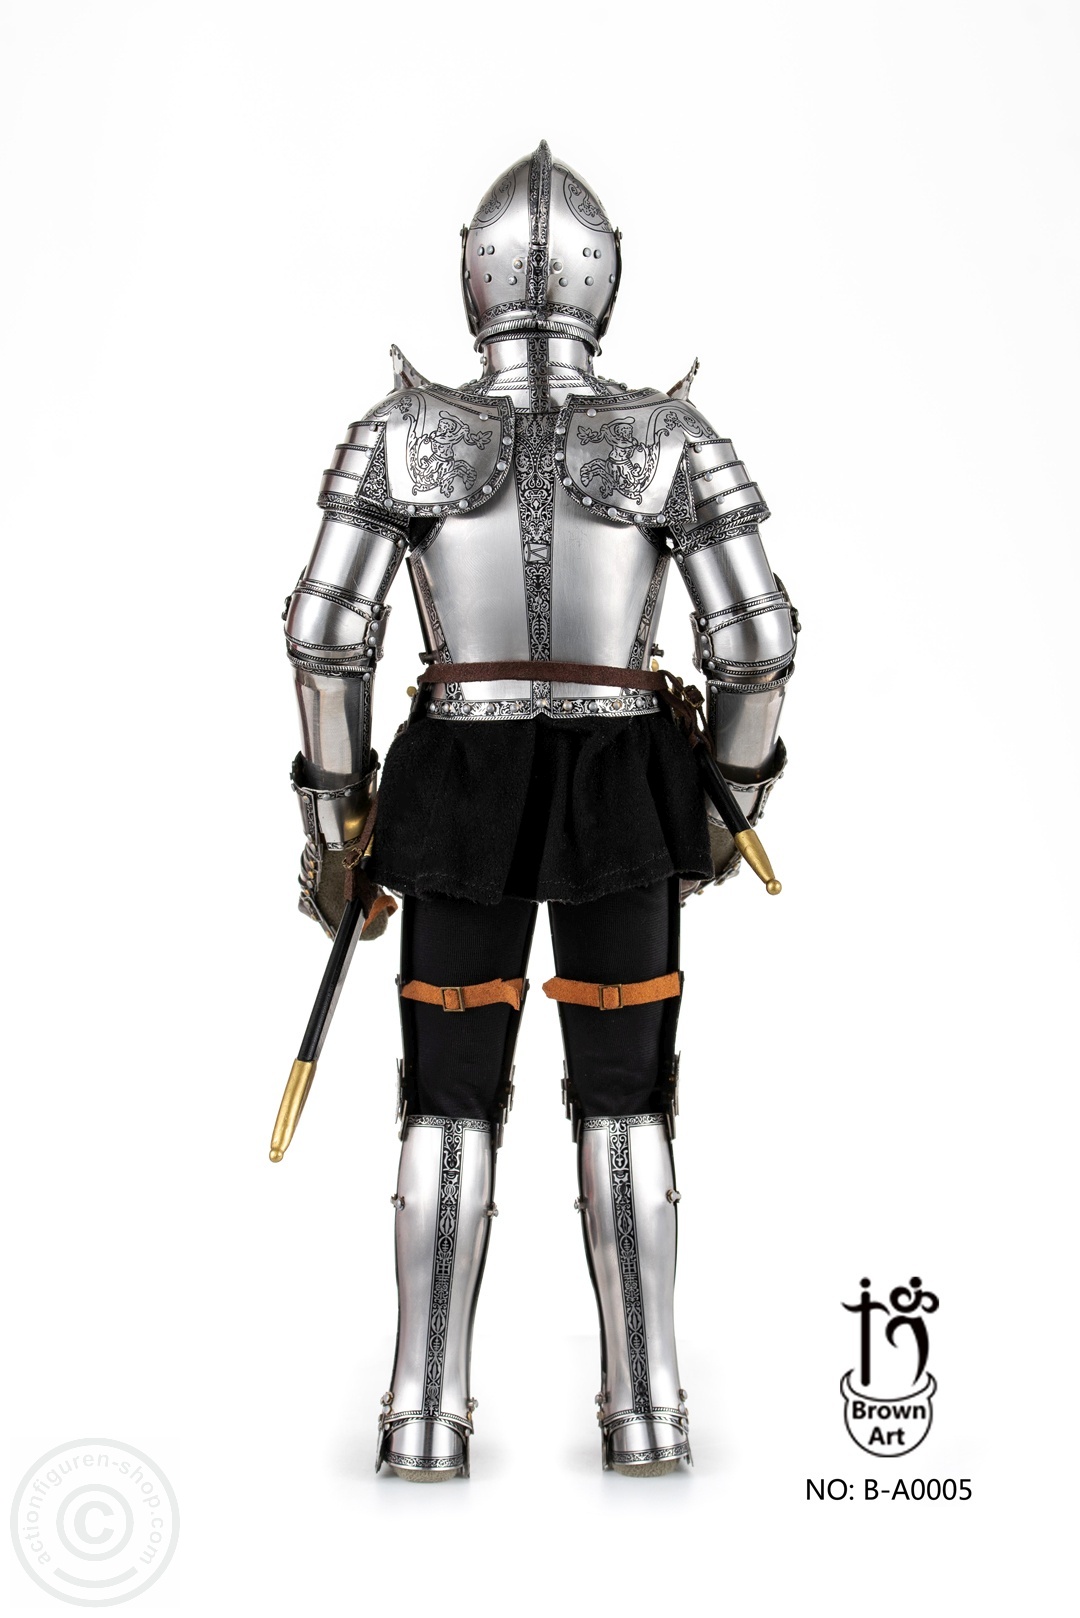 Duke of Saxony-Coburg (1548) – in Armor